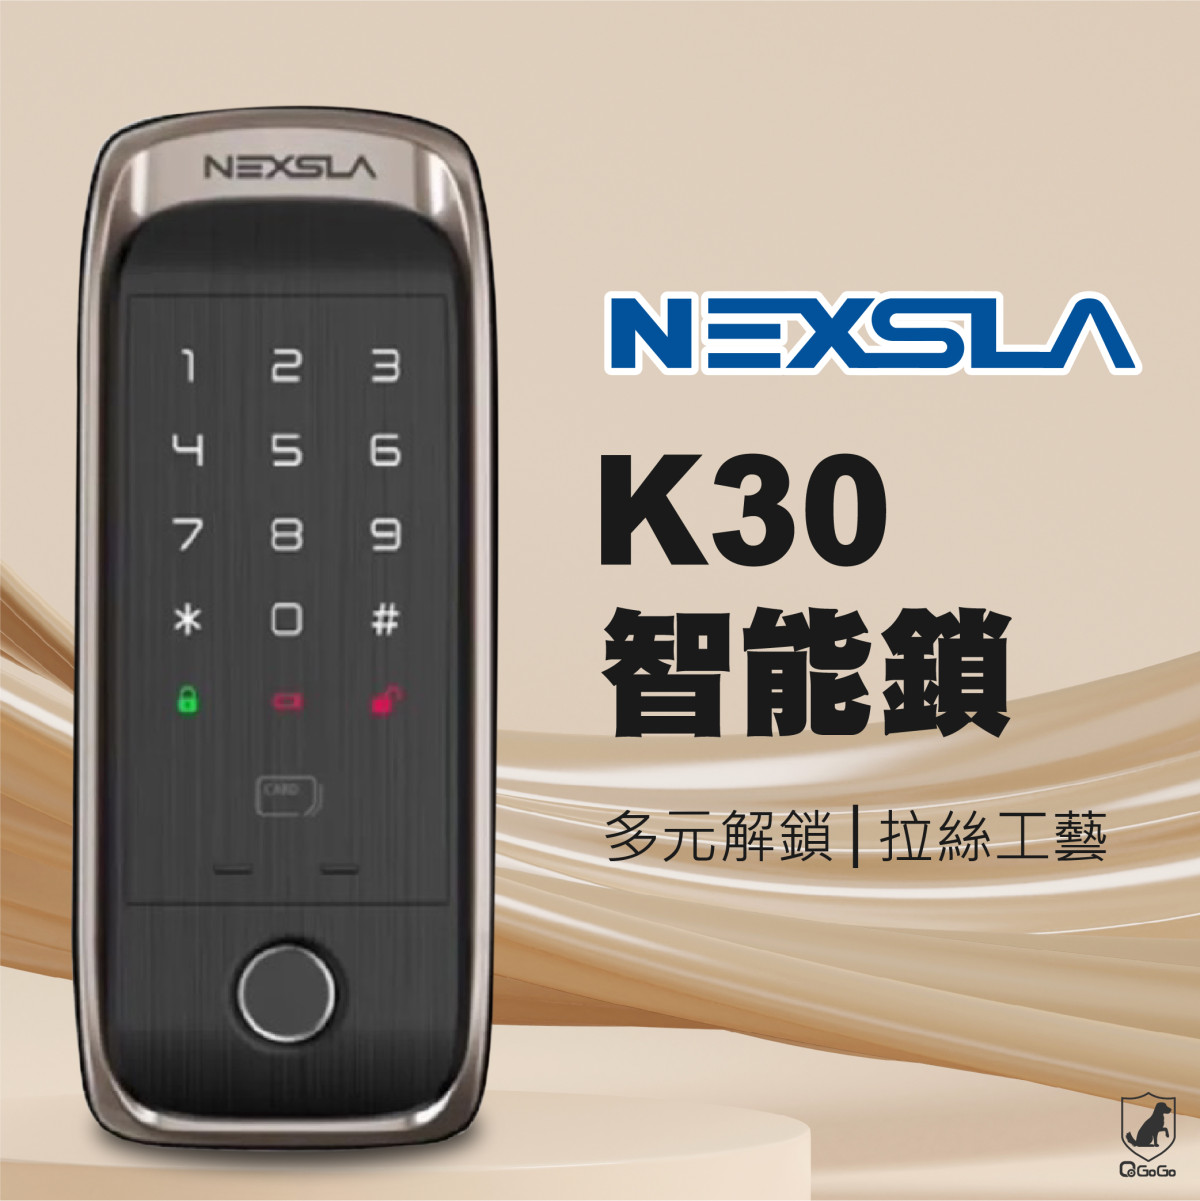 【韓國NEXSLA】K30 智能輔助電子鎖 指紋/密碼/卡片解鎖 多重安全防護